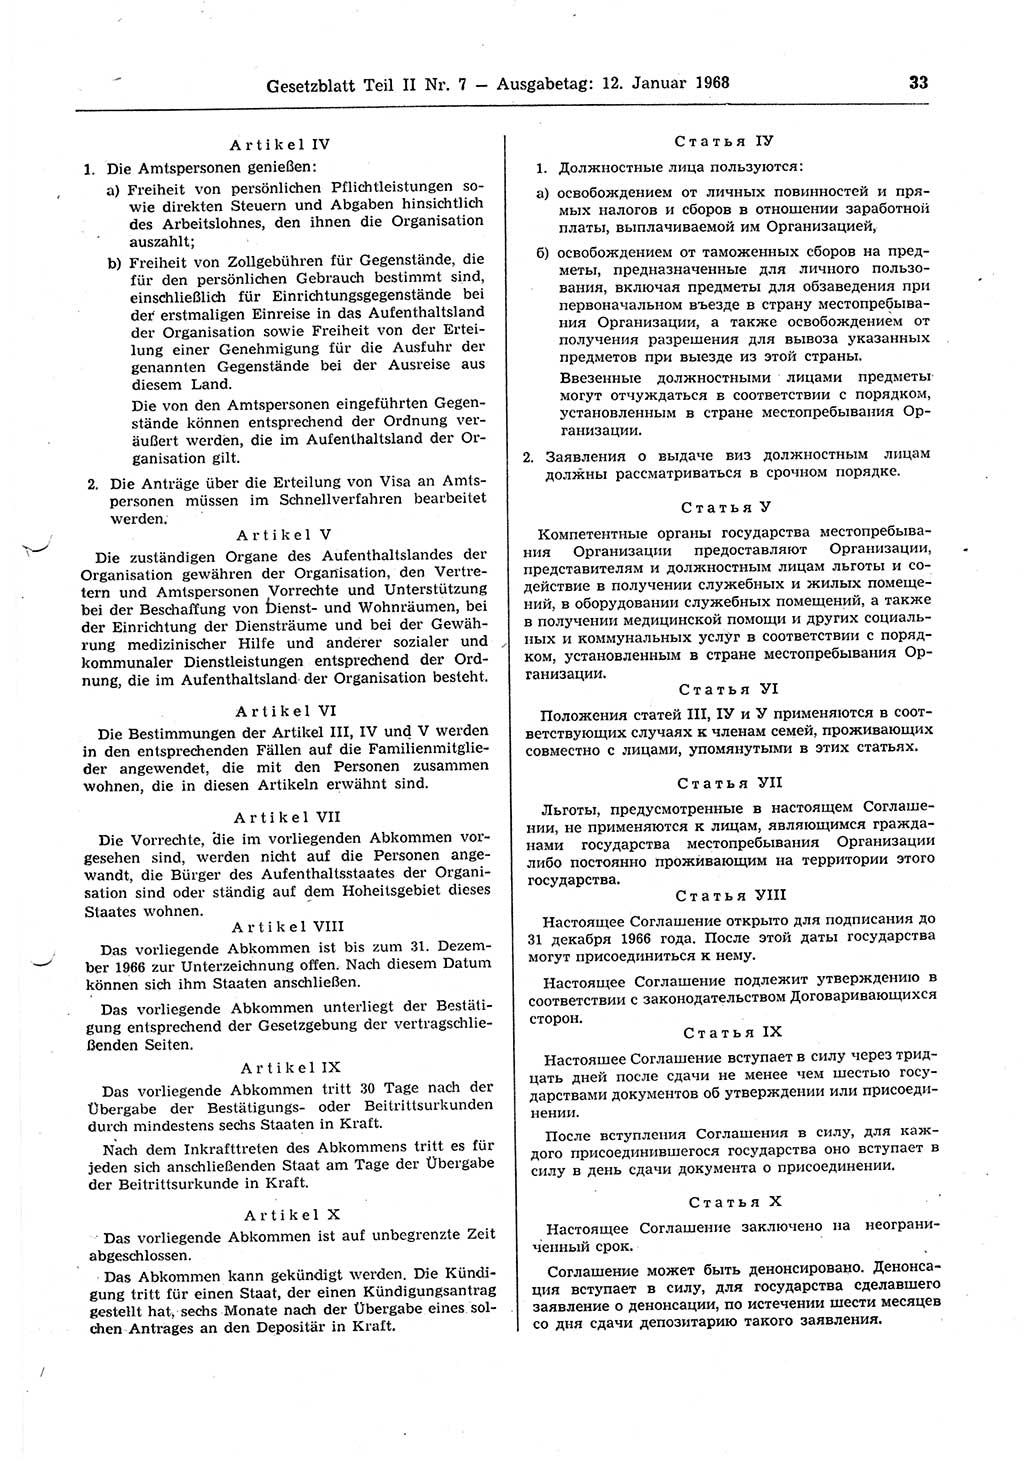 Gesetzblatt (GBl.) der Deutschen Demokratischen Republik (DDR) Teil ⅠⅠ 1968, Seite 33 (GBl. DDR ⅠⅠ 1968, S. 33)